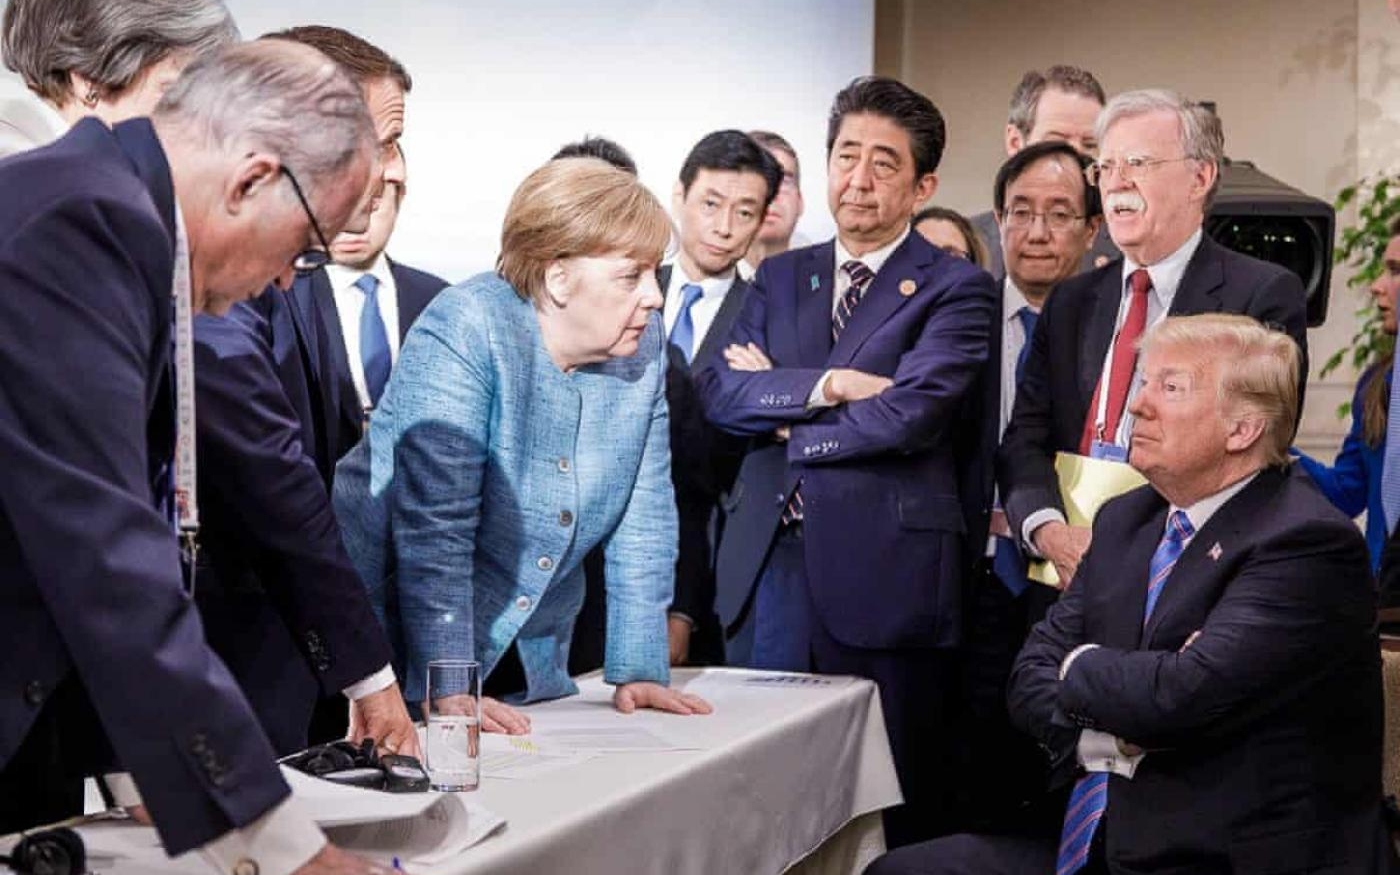 Le président américain Donald Trump fait face à la chancelière allemande Angela Merkel et à d’autres dirigeants mondiaux lors d’un sommet du G7 au Canada, en juin 2018 (gouvernement allemand)